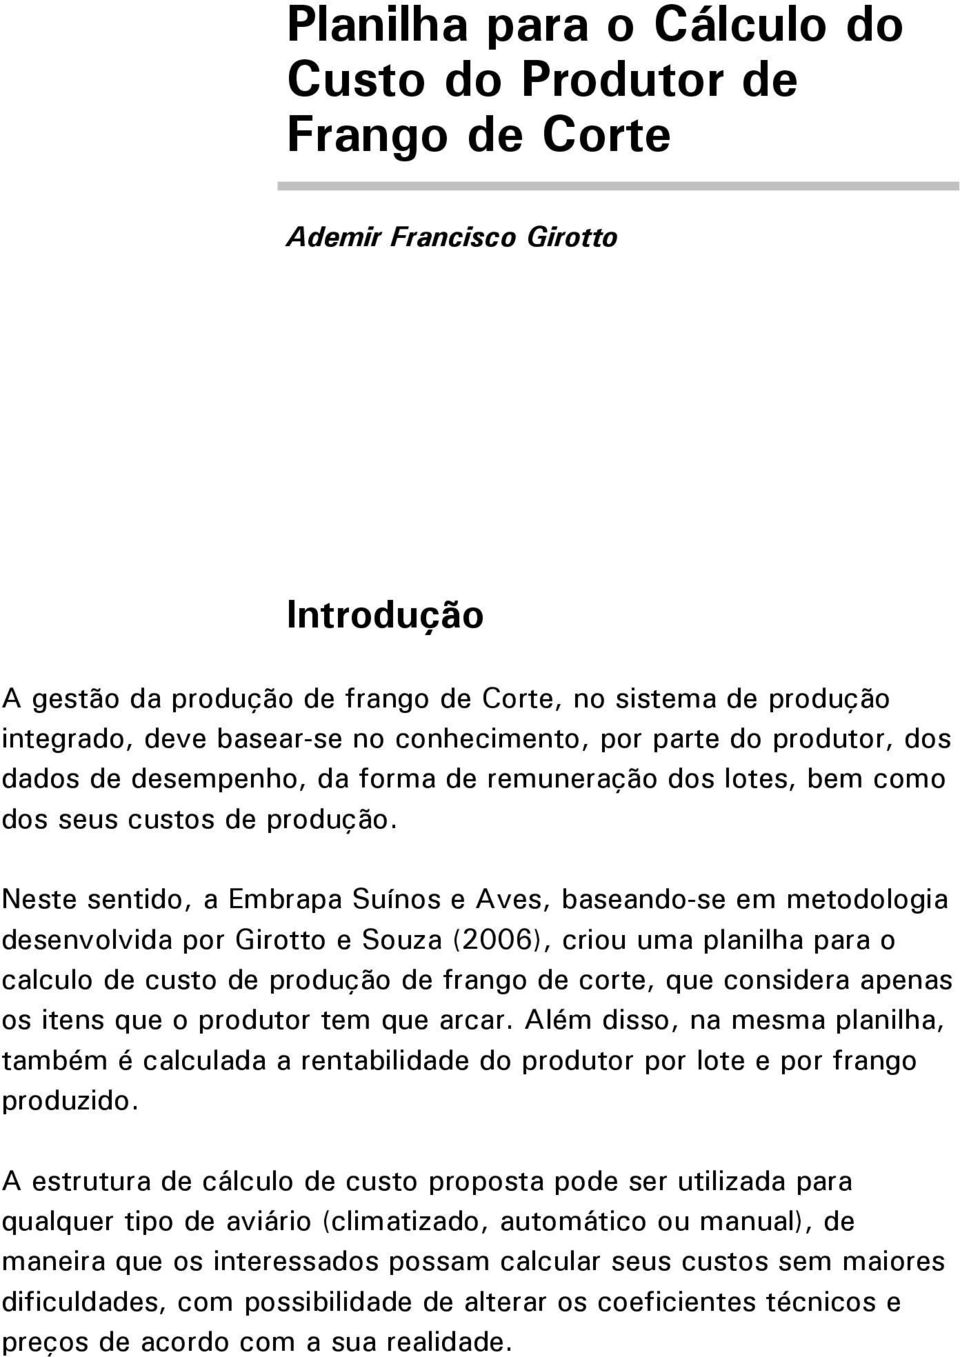 Neste sentido, a Embrapa Suínos e Aves, baseando-se em metodologia desenvolvida por Girotto e Souza (2006), criou uma planilha para o calculo de custo de produção de frango de corte, que considera